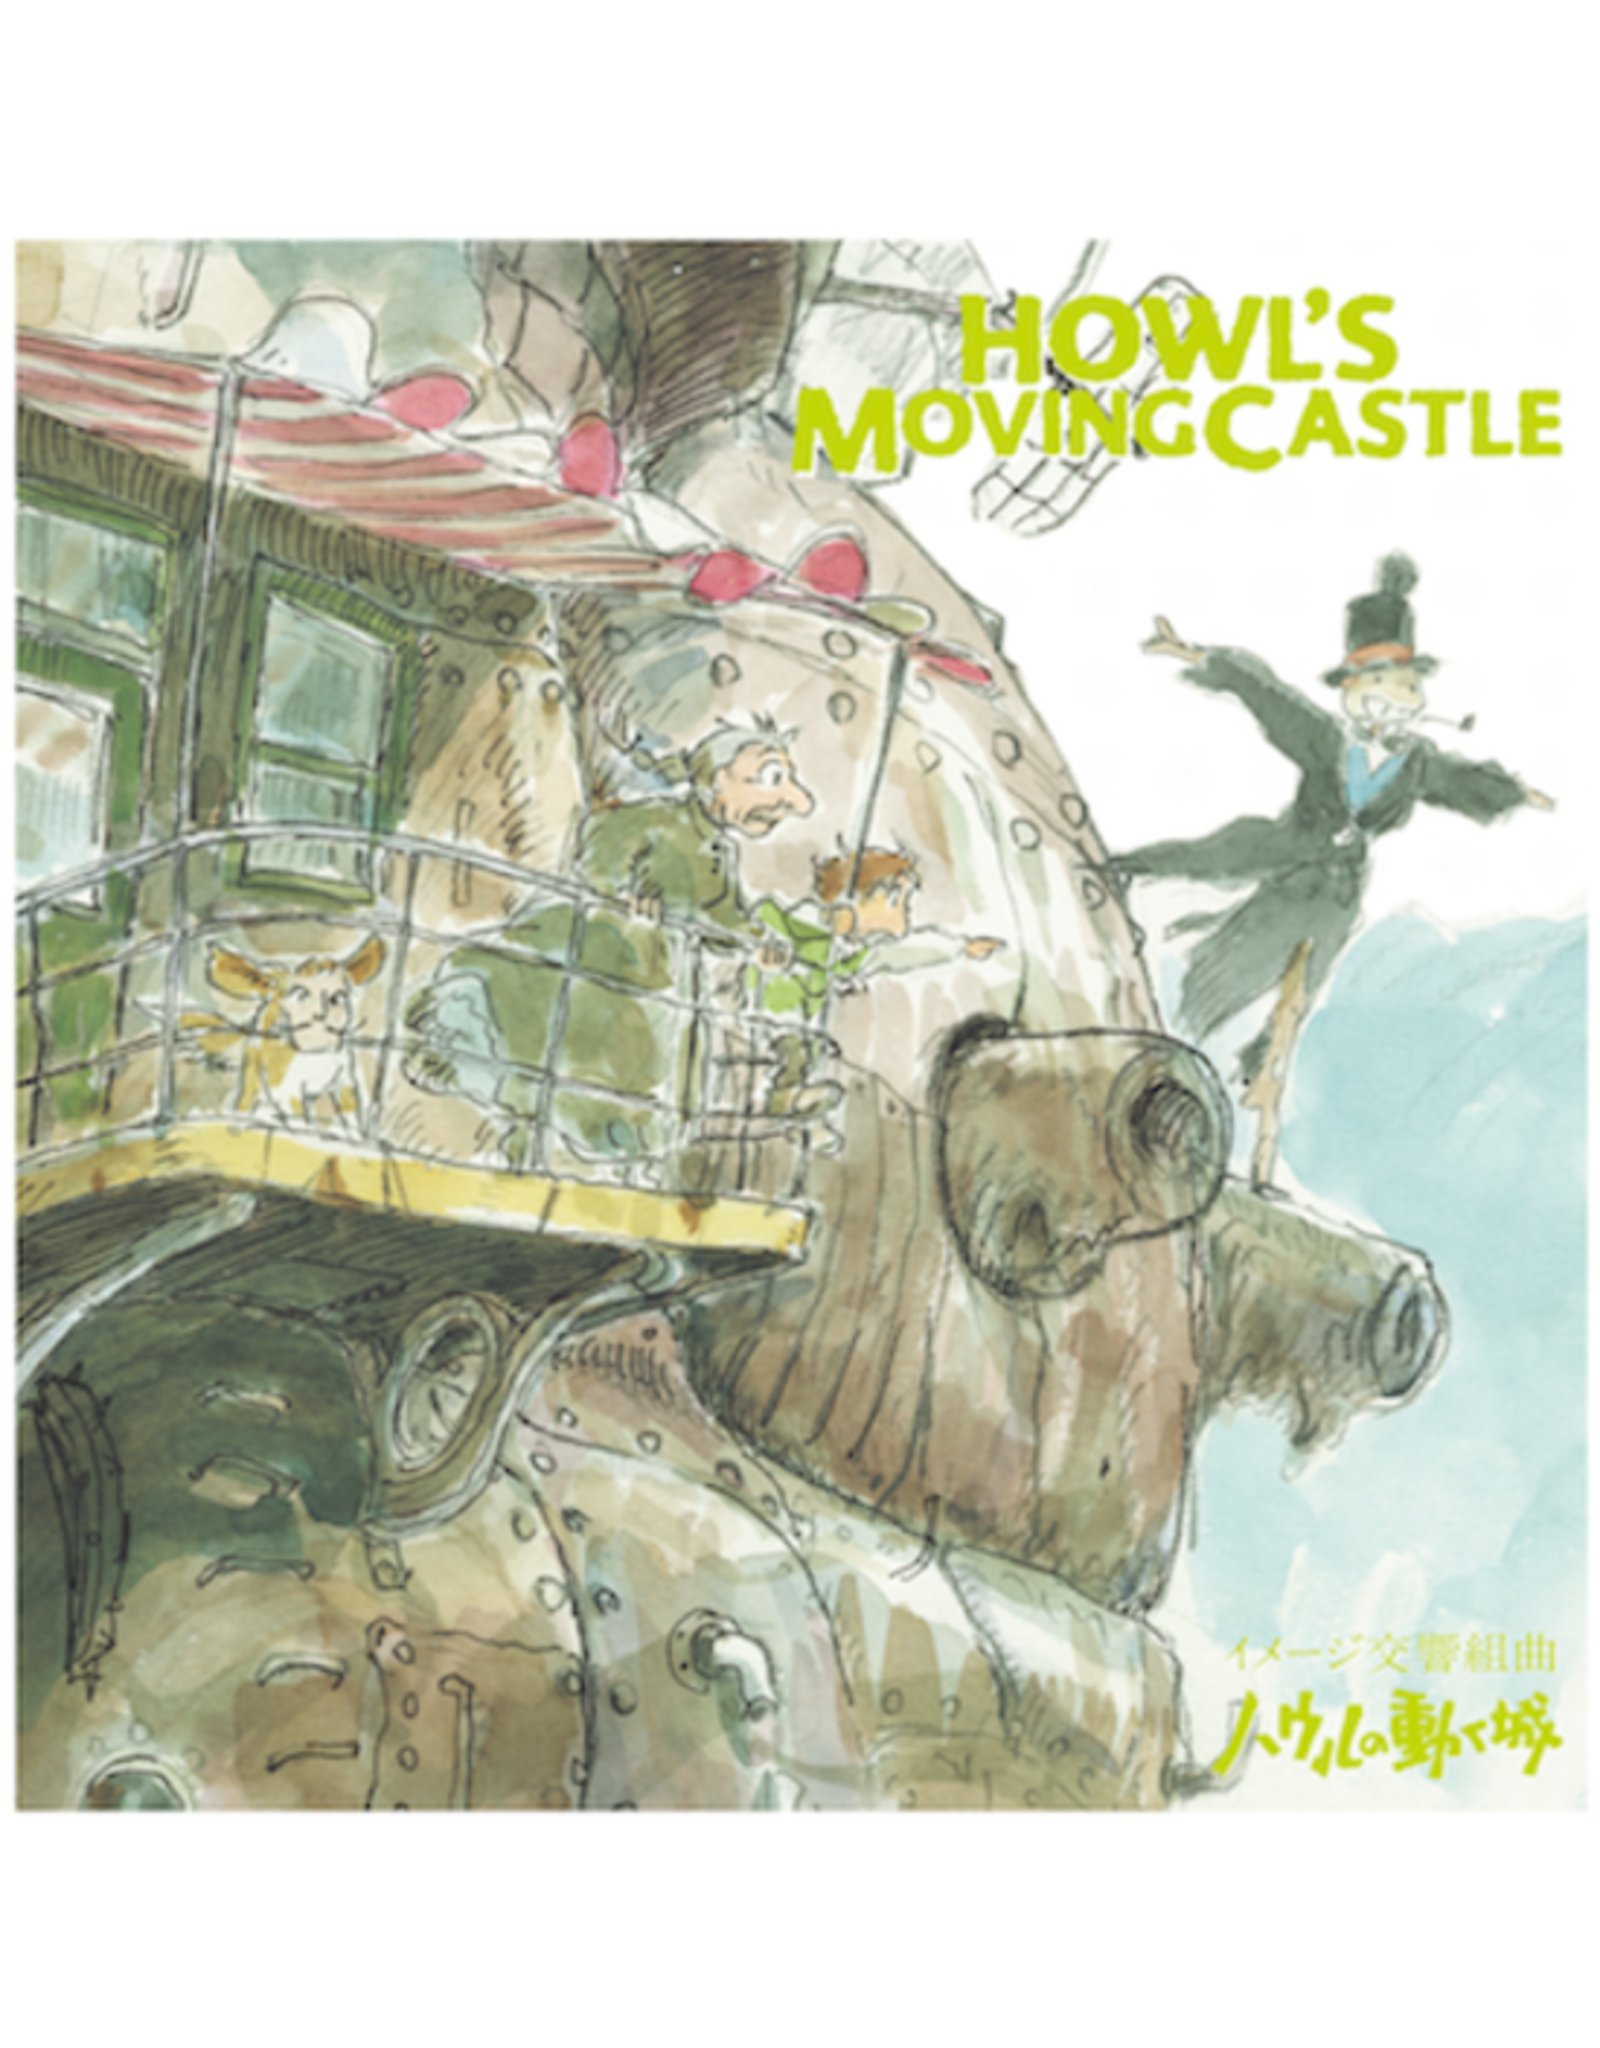 Studio Ghibli Hisaishi, Joe: Howl's Moving Castle: Image Symphonic Suite LP